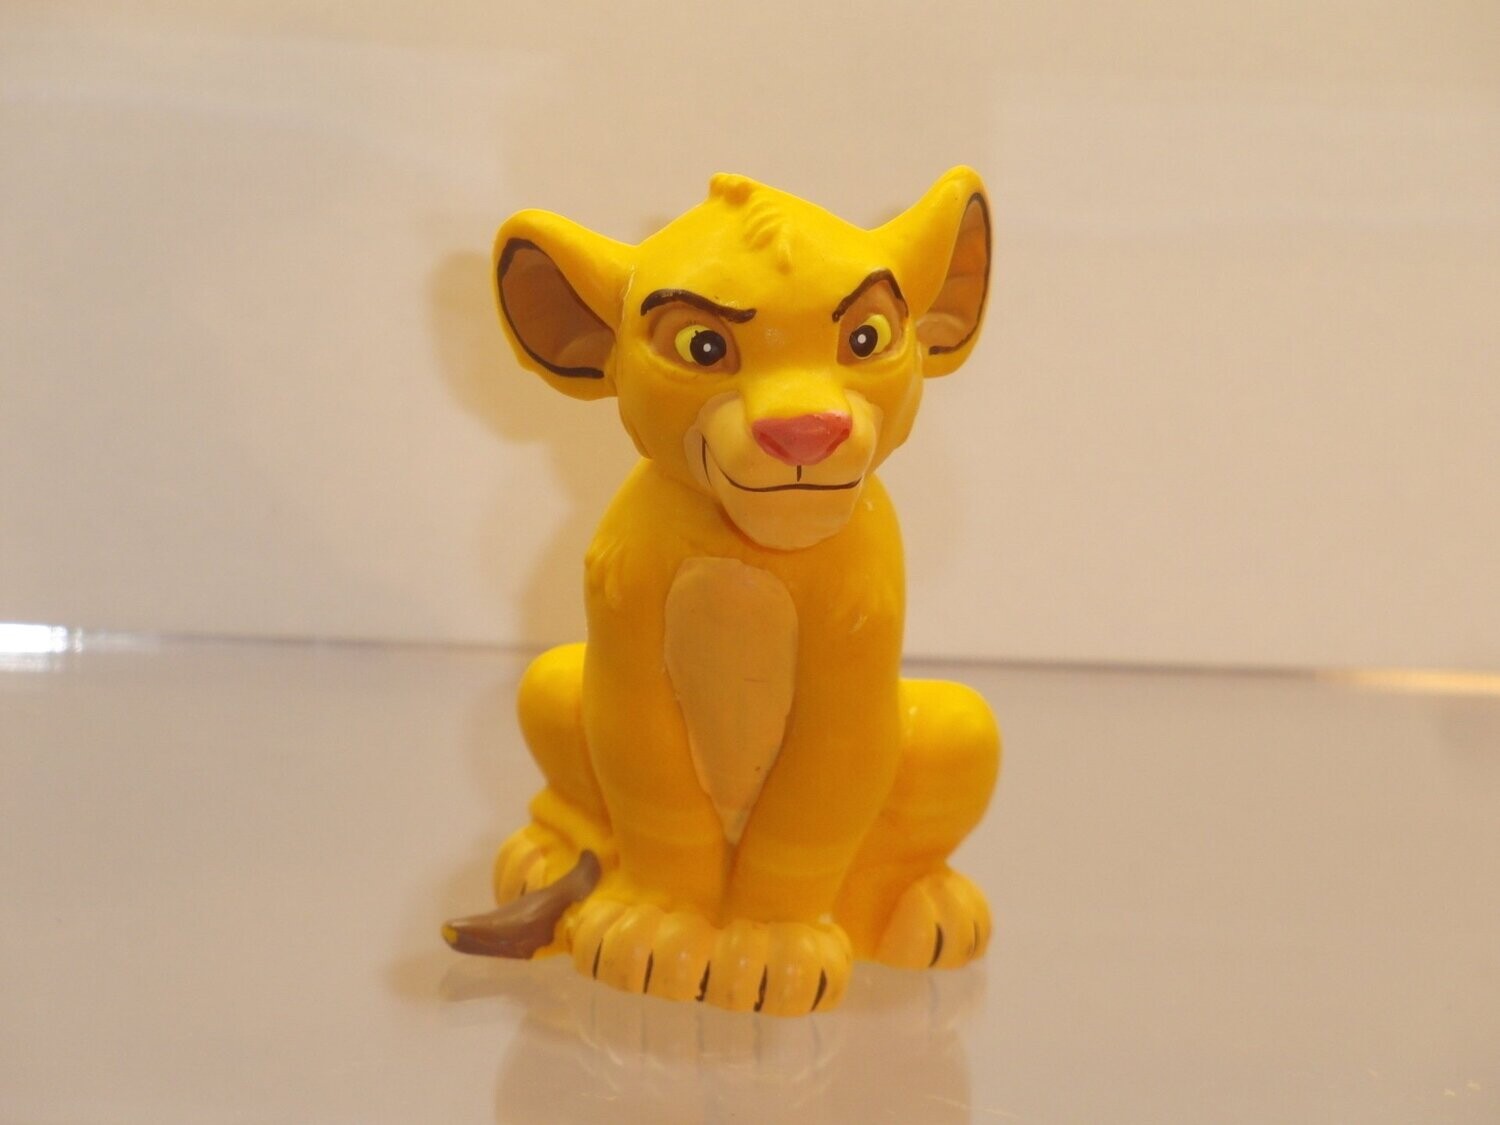 Disney's König der Löwen: Bully/Bullyland ab 1995: Simba sitzend